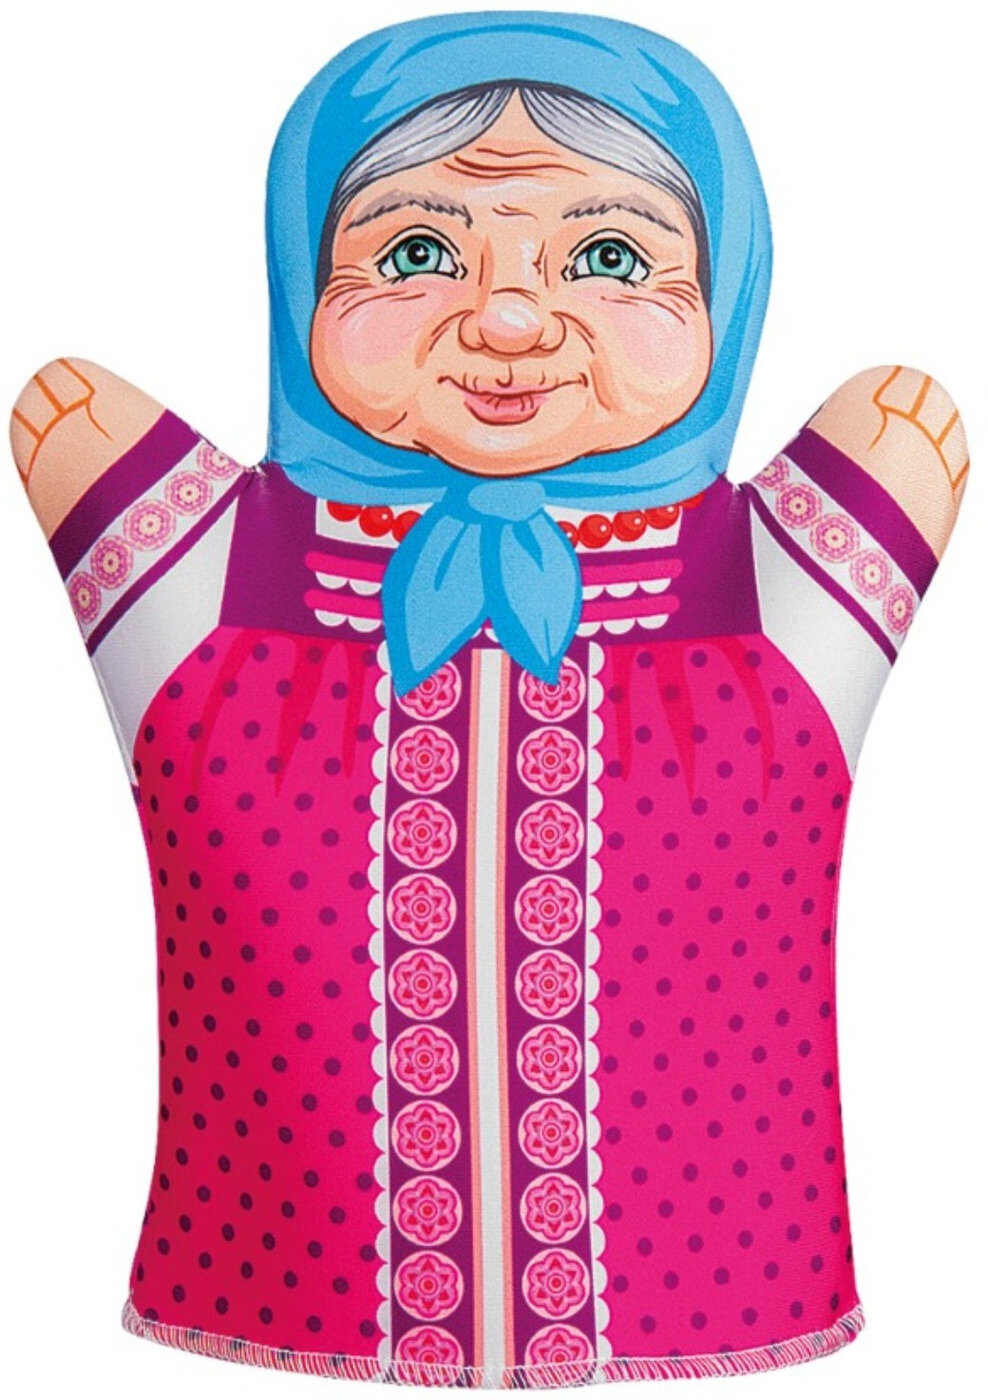 Кукла-рукавичка Мягкая игрушка на руку "Бабушка", кукла-перчатка для кукольного театра, перчаточная кукла